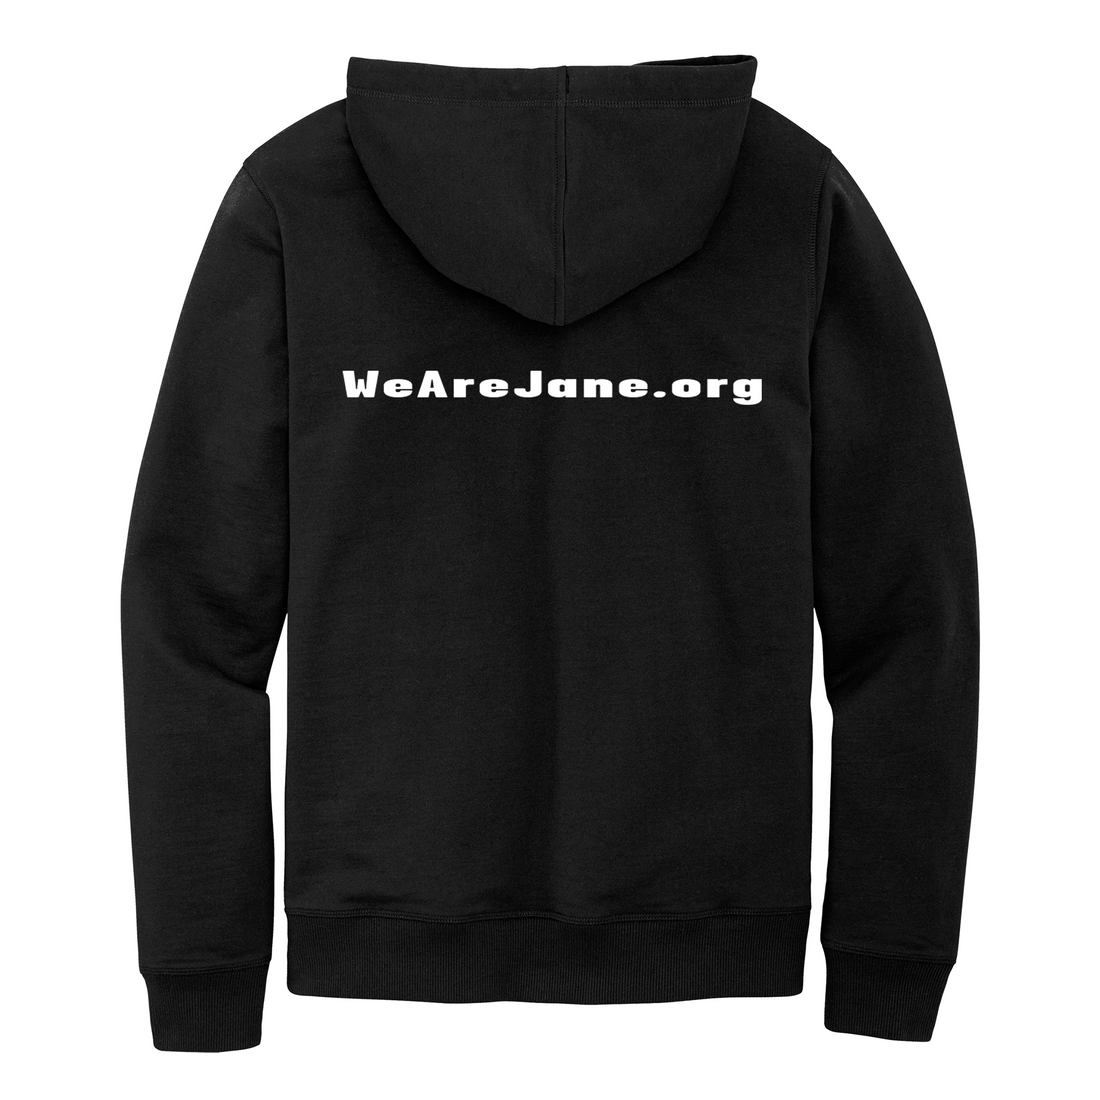 Unisex JANE Hoodie Sweatshirt in Black with White Letters